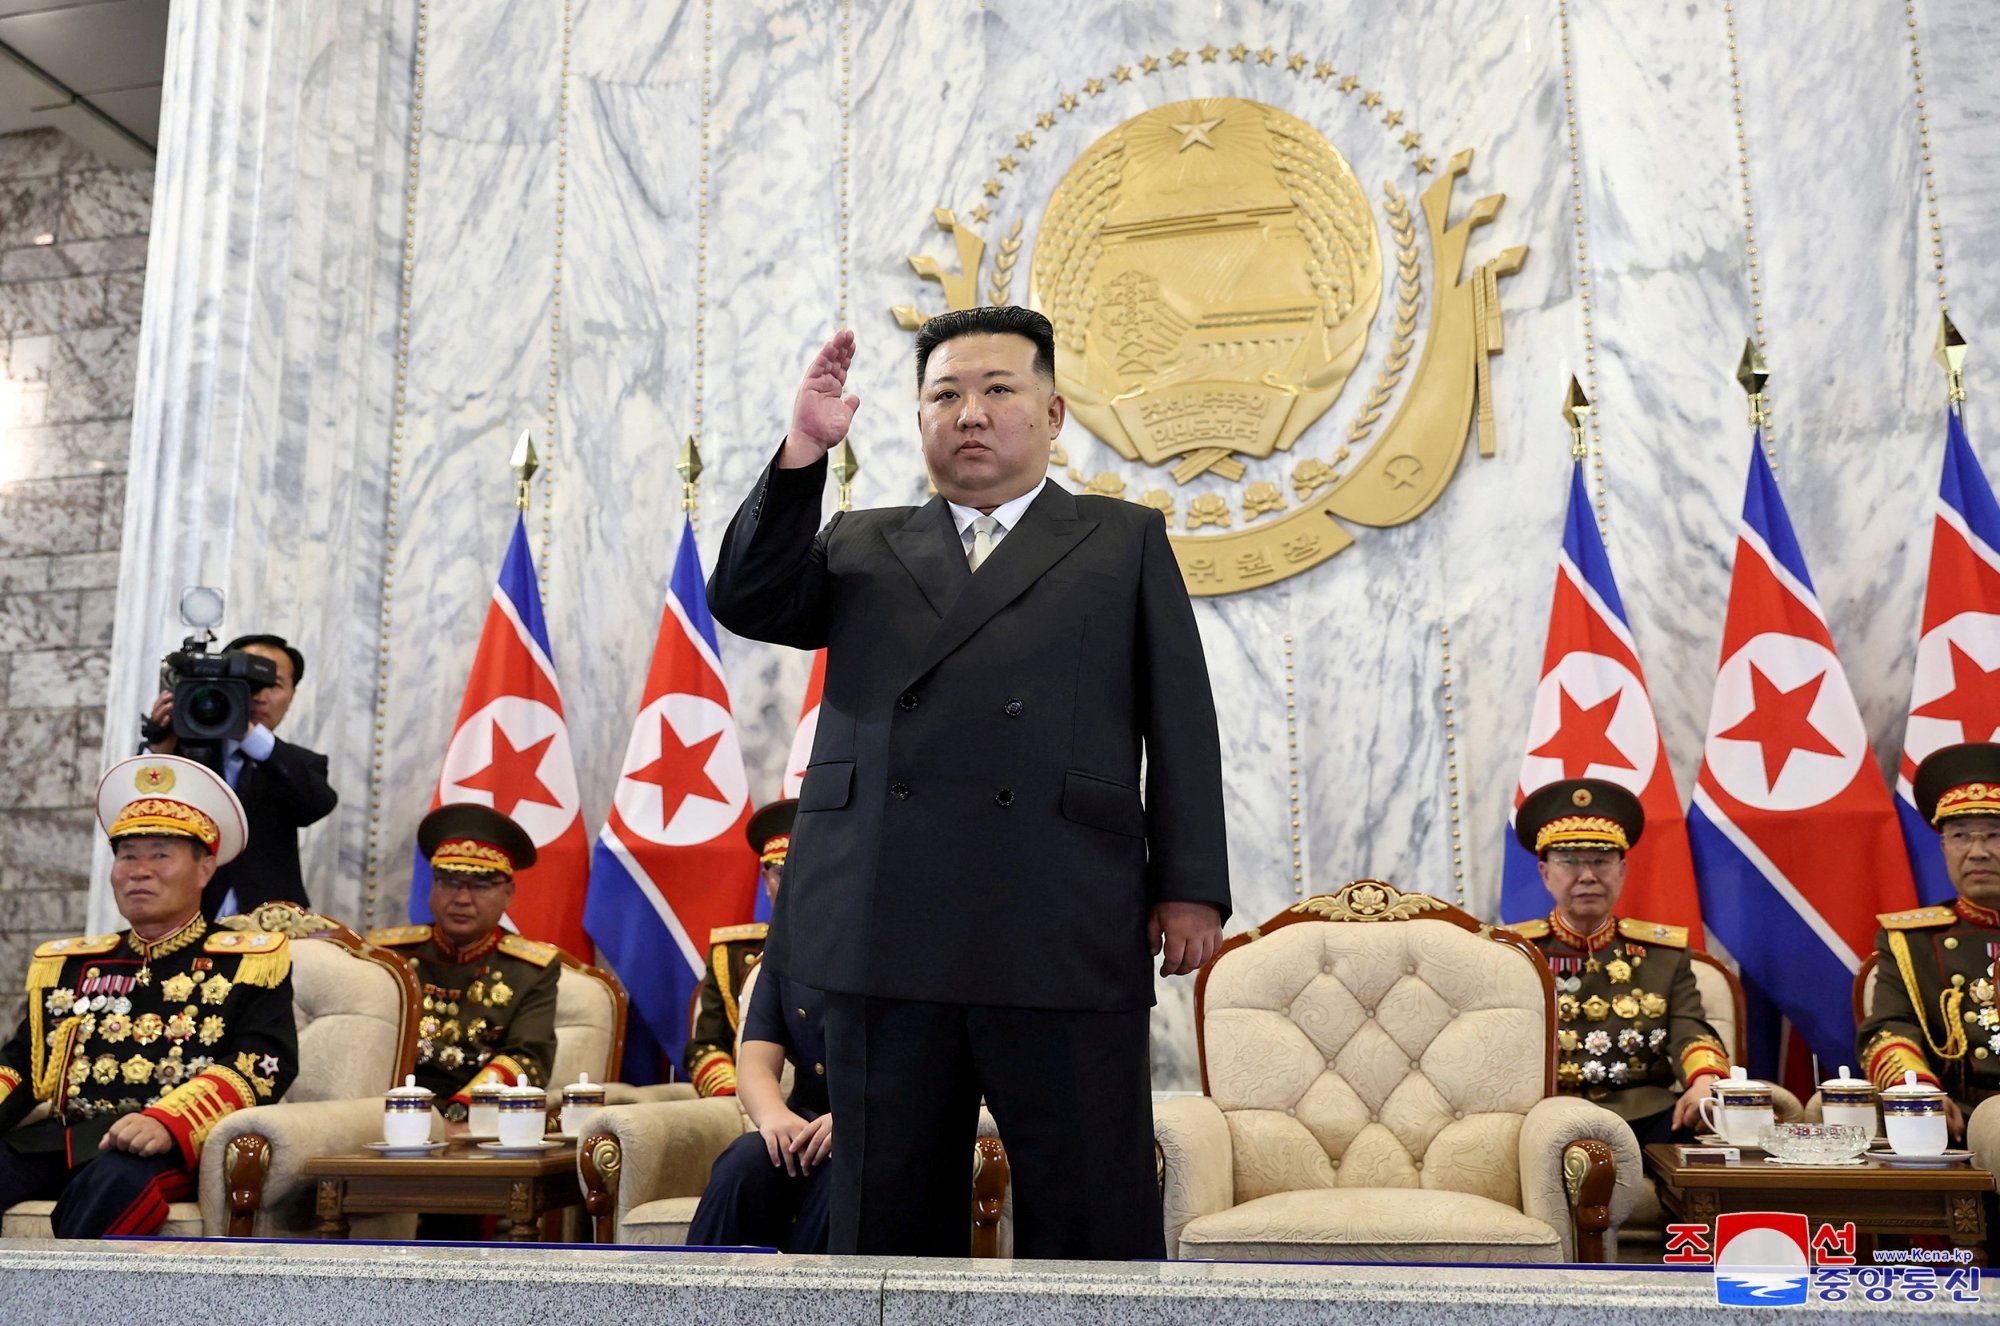 Κιμ Γιονγκ Ουν: Οι κάτοικοι στο Βλαδιβοστόκ της Ρωσίας αναμένουν τον Βορειοκορεάτη ηγέτη - Ανησυχούν οι ΗΠΑ